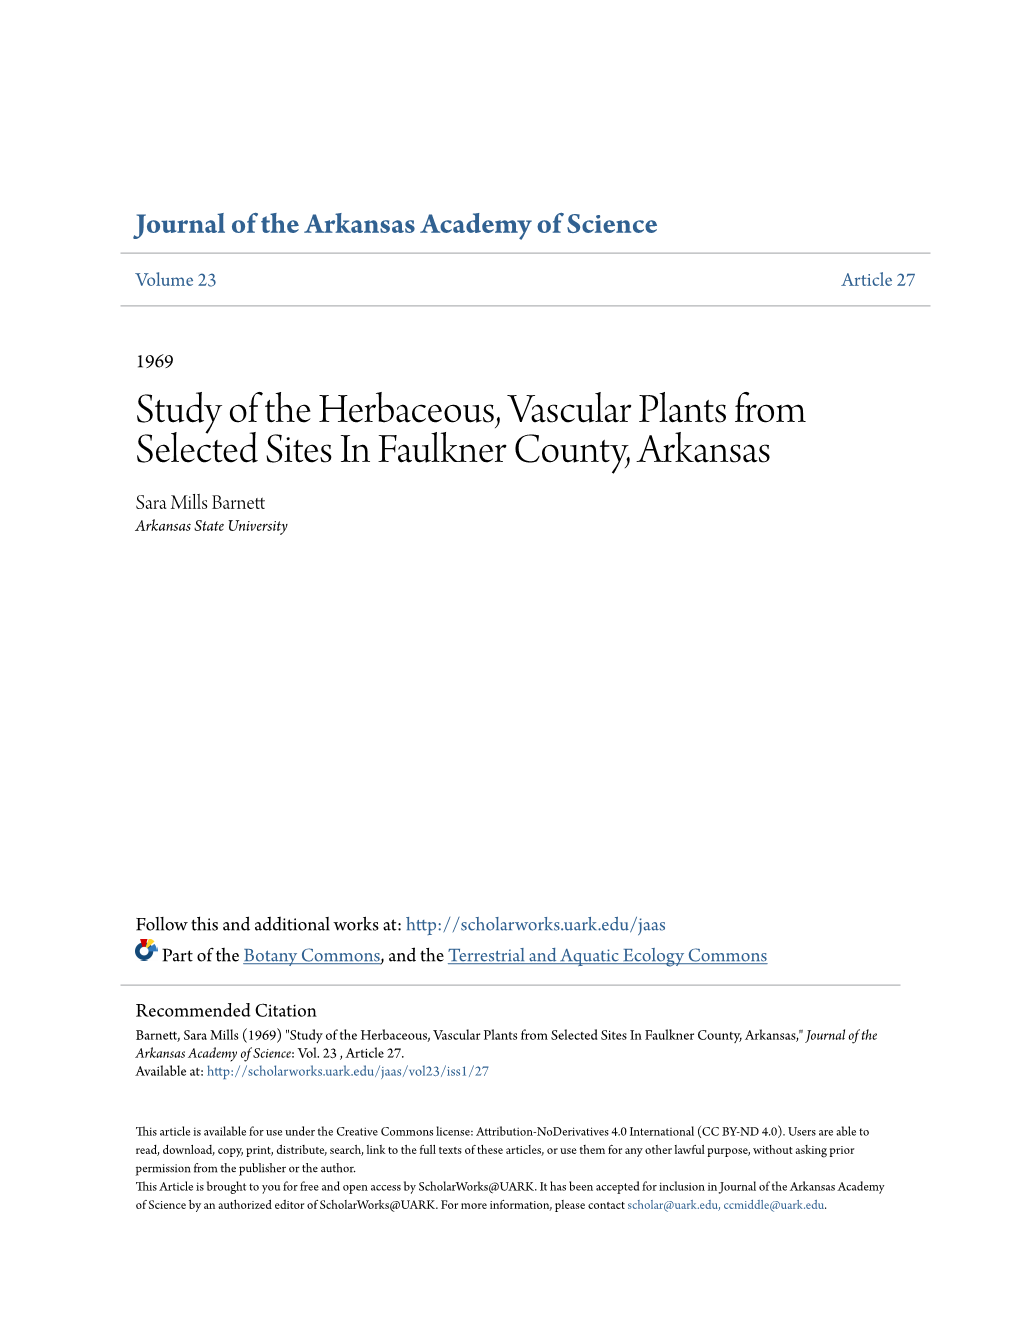 Study of the Herbaceous, Vascular Plants from Selected Sites in Faulkner County, Arkansas Sara Mills Barnett Arkansas State University